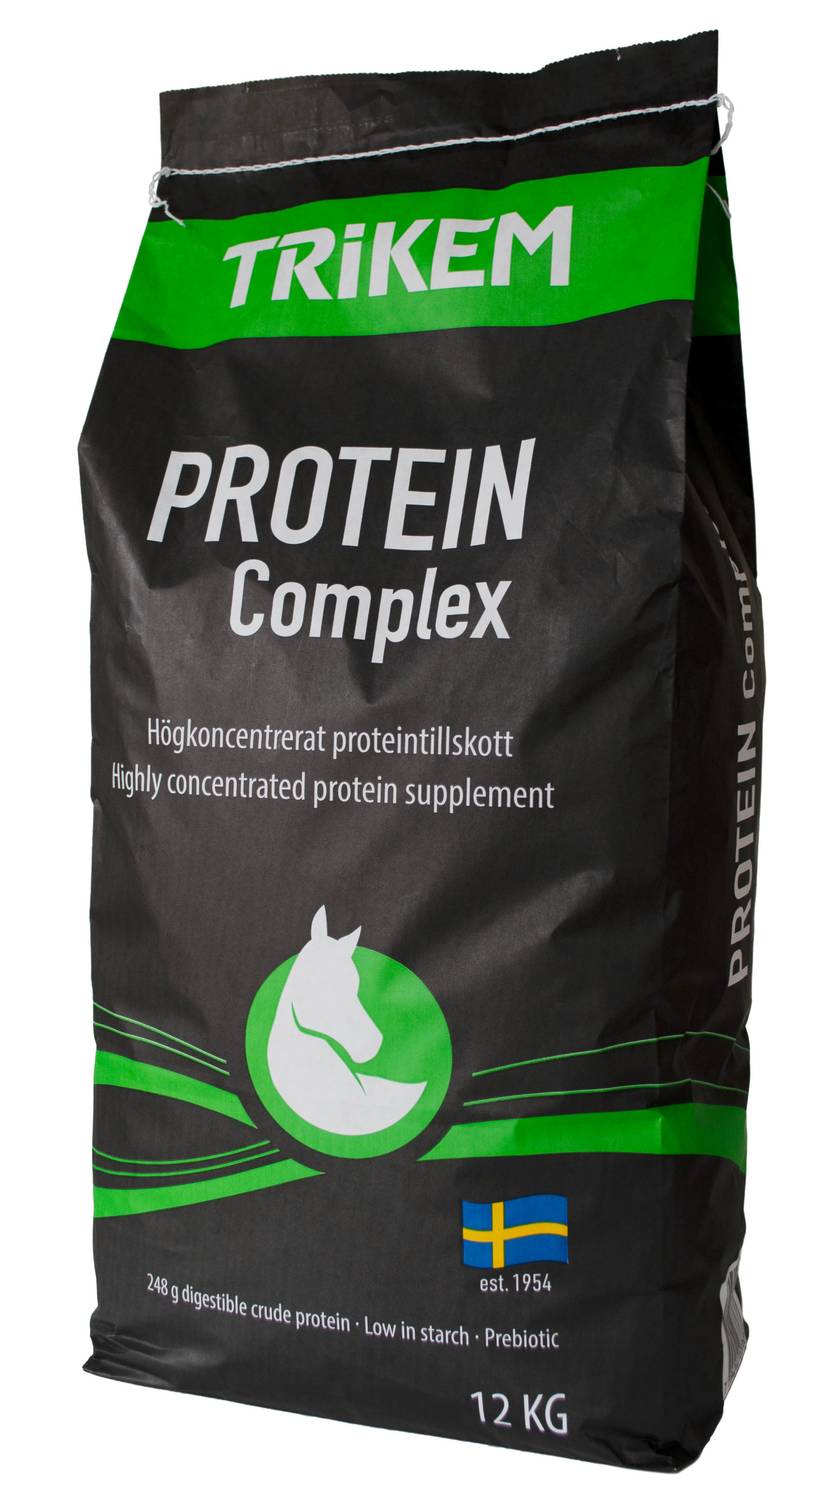 Trikem Protein complex Pro Balancer, 12kg